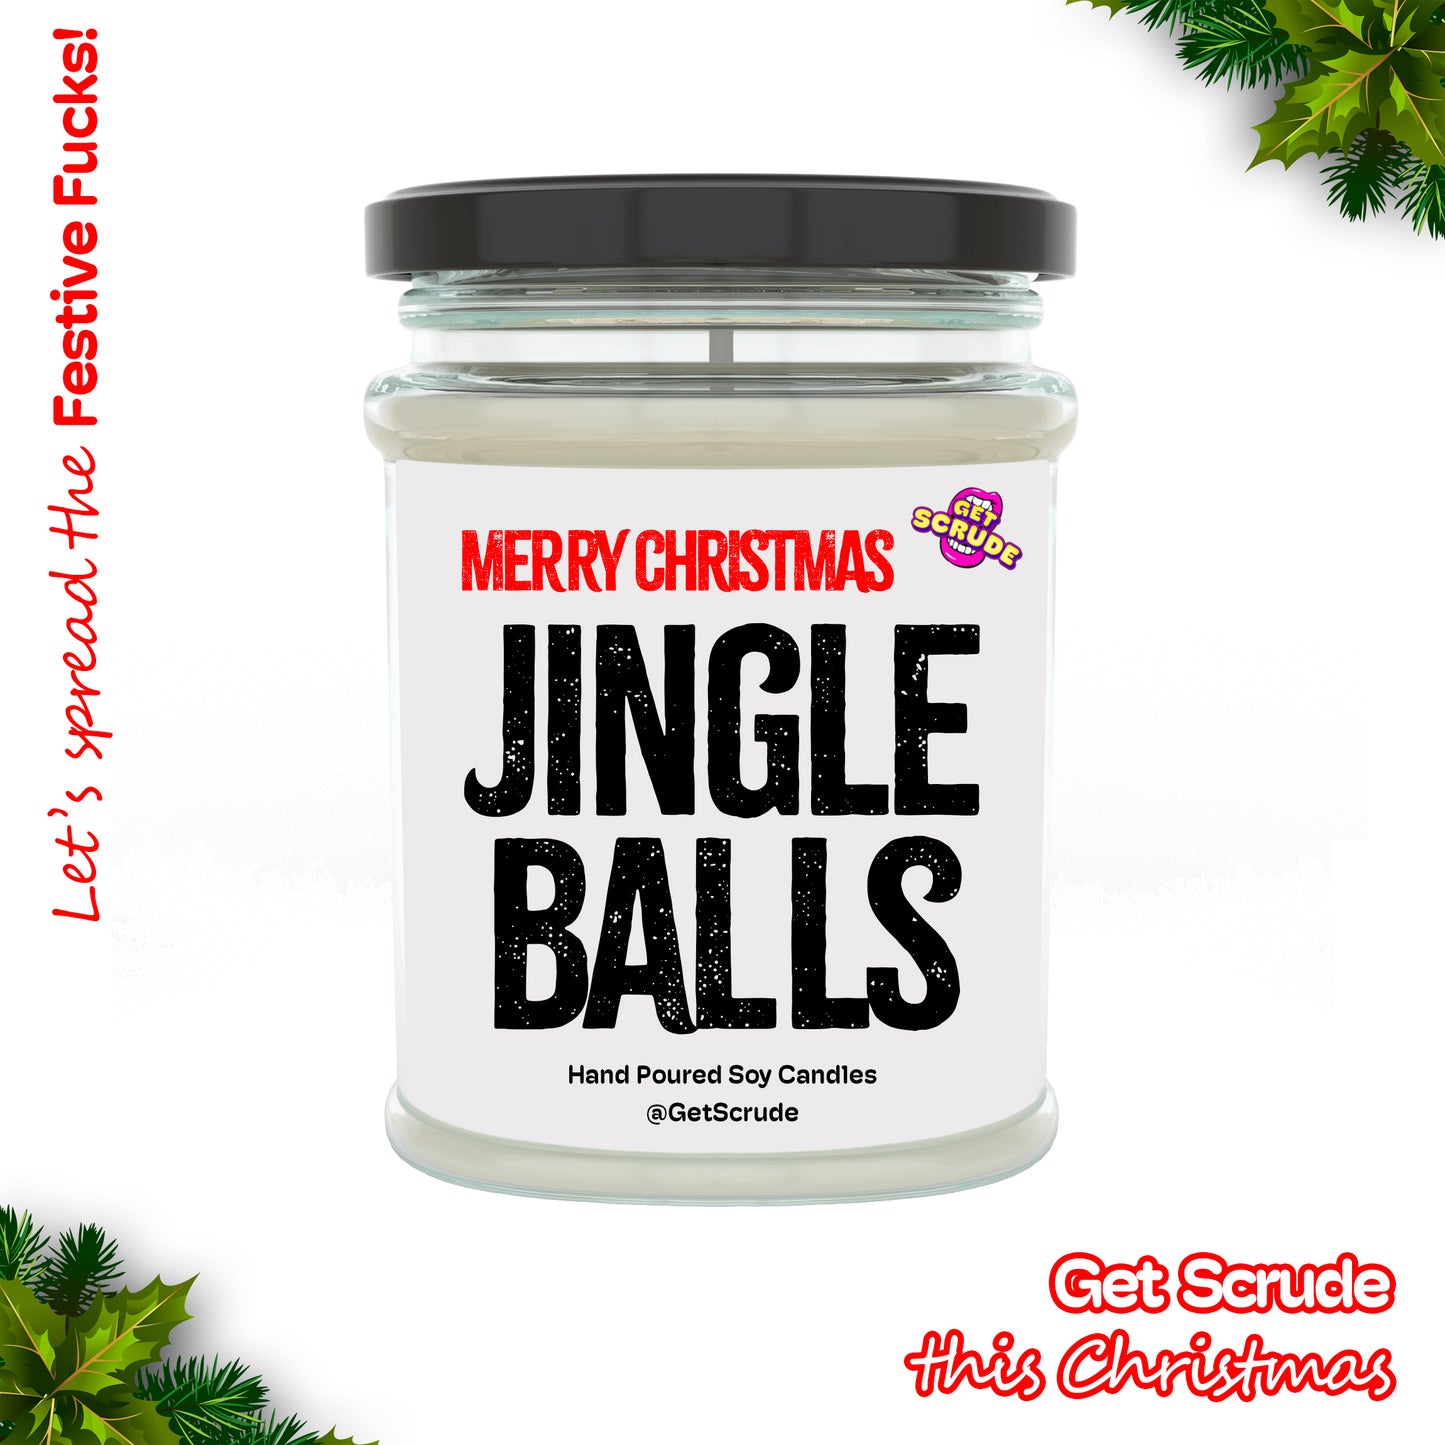 Merry Christmas Jingle balls